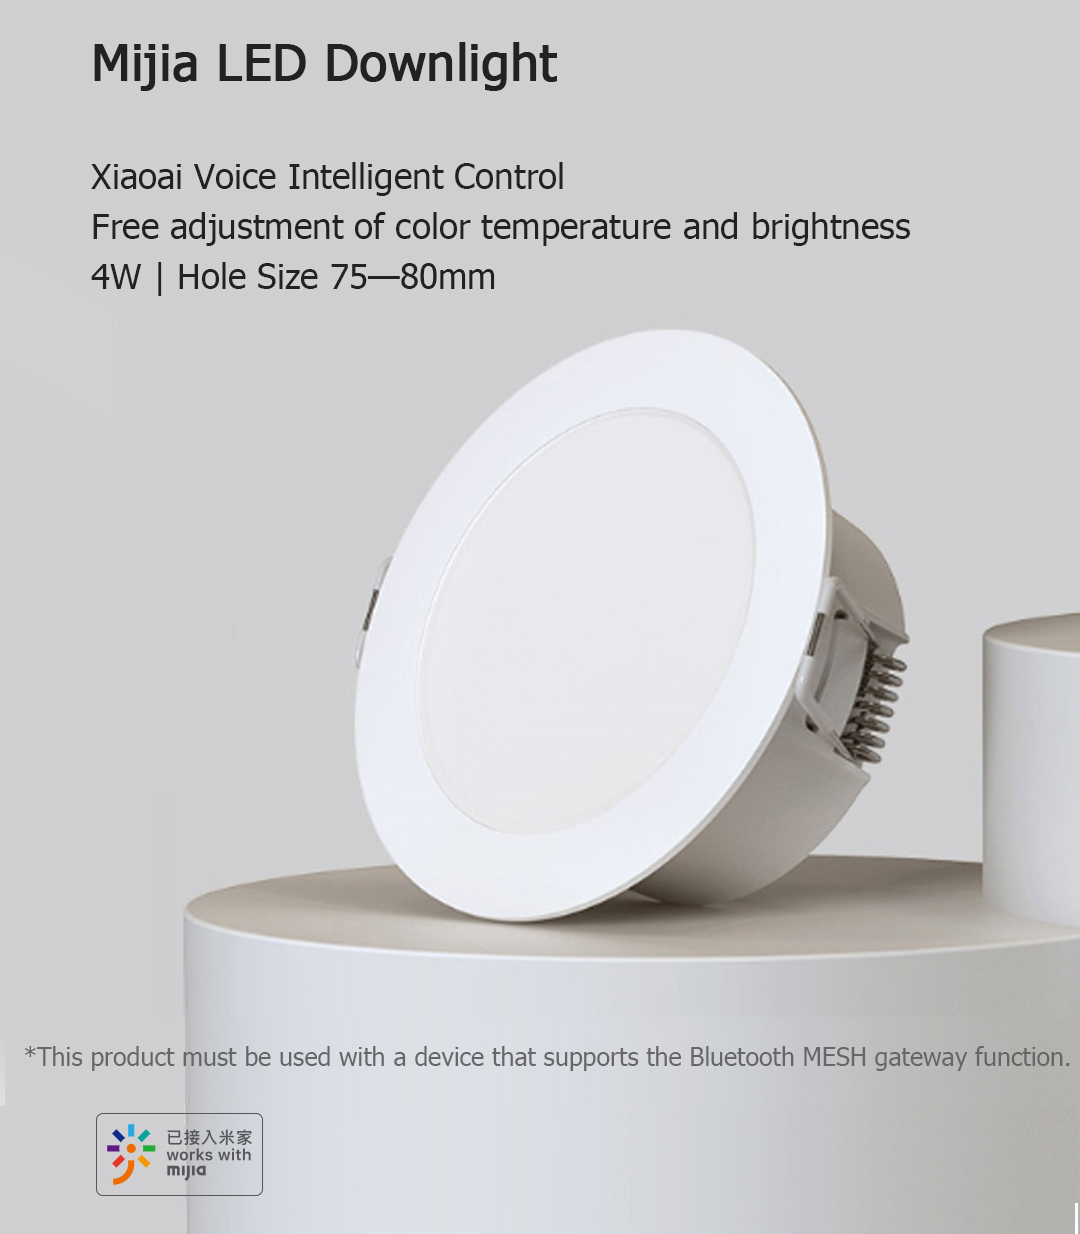 Đèn Led Downlight Xiaomi Mijia Thông Minh Điều Khiển Bằng Giọng Nói (Vcs01)